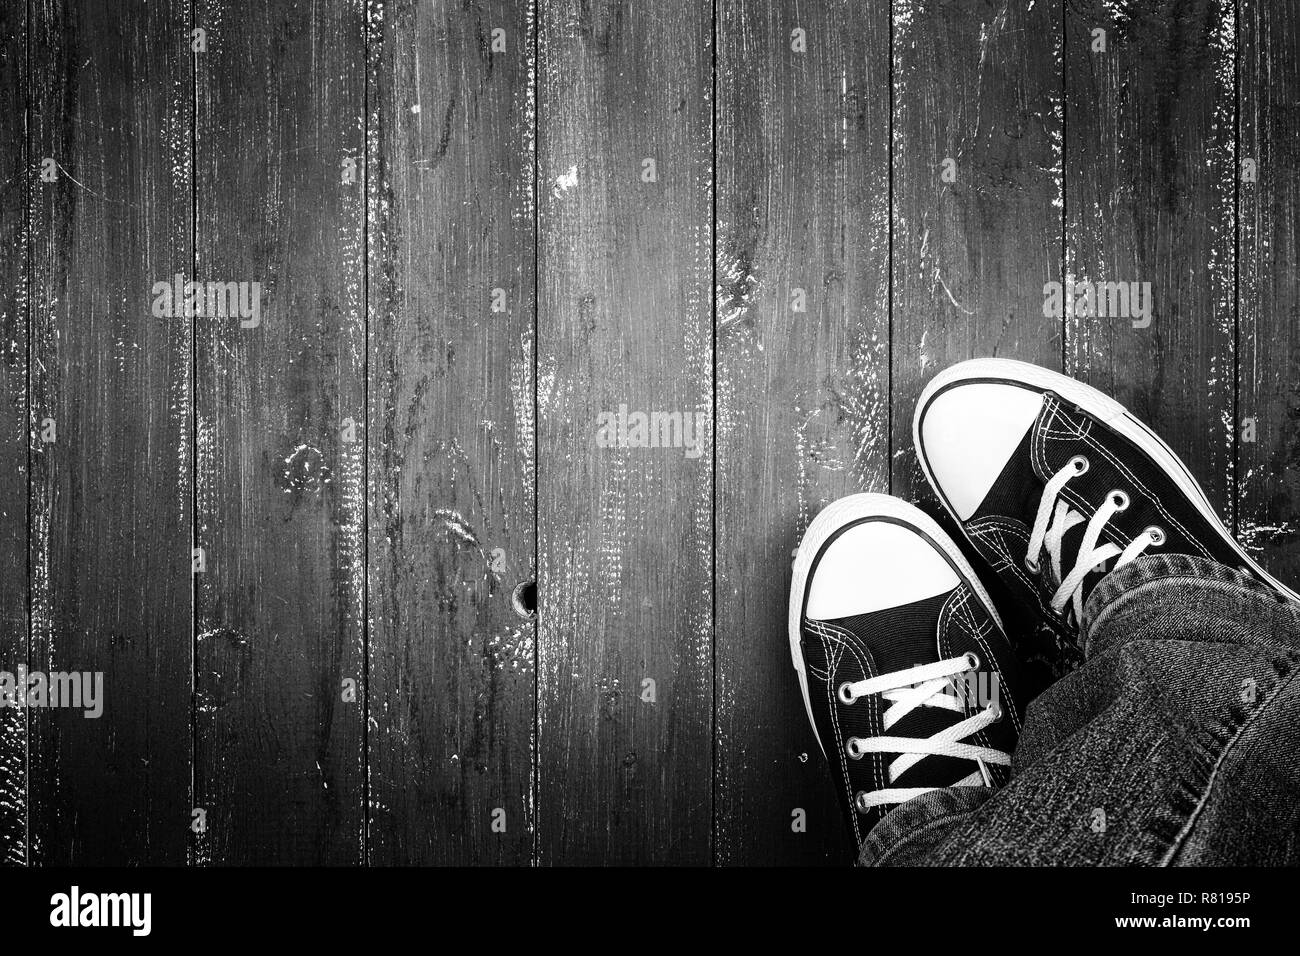 Bekleidung, Schuhe und Zubehör - Ansicht von oben Nahaufnahme Beine in Gumshoes und Jeans top Aussicht auf einer hölzernen Hintergrund einfarbig Stockfoto